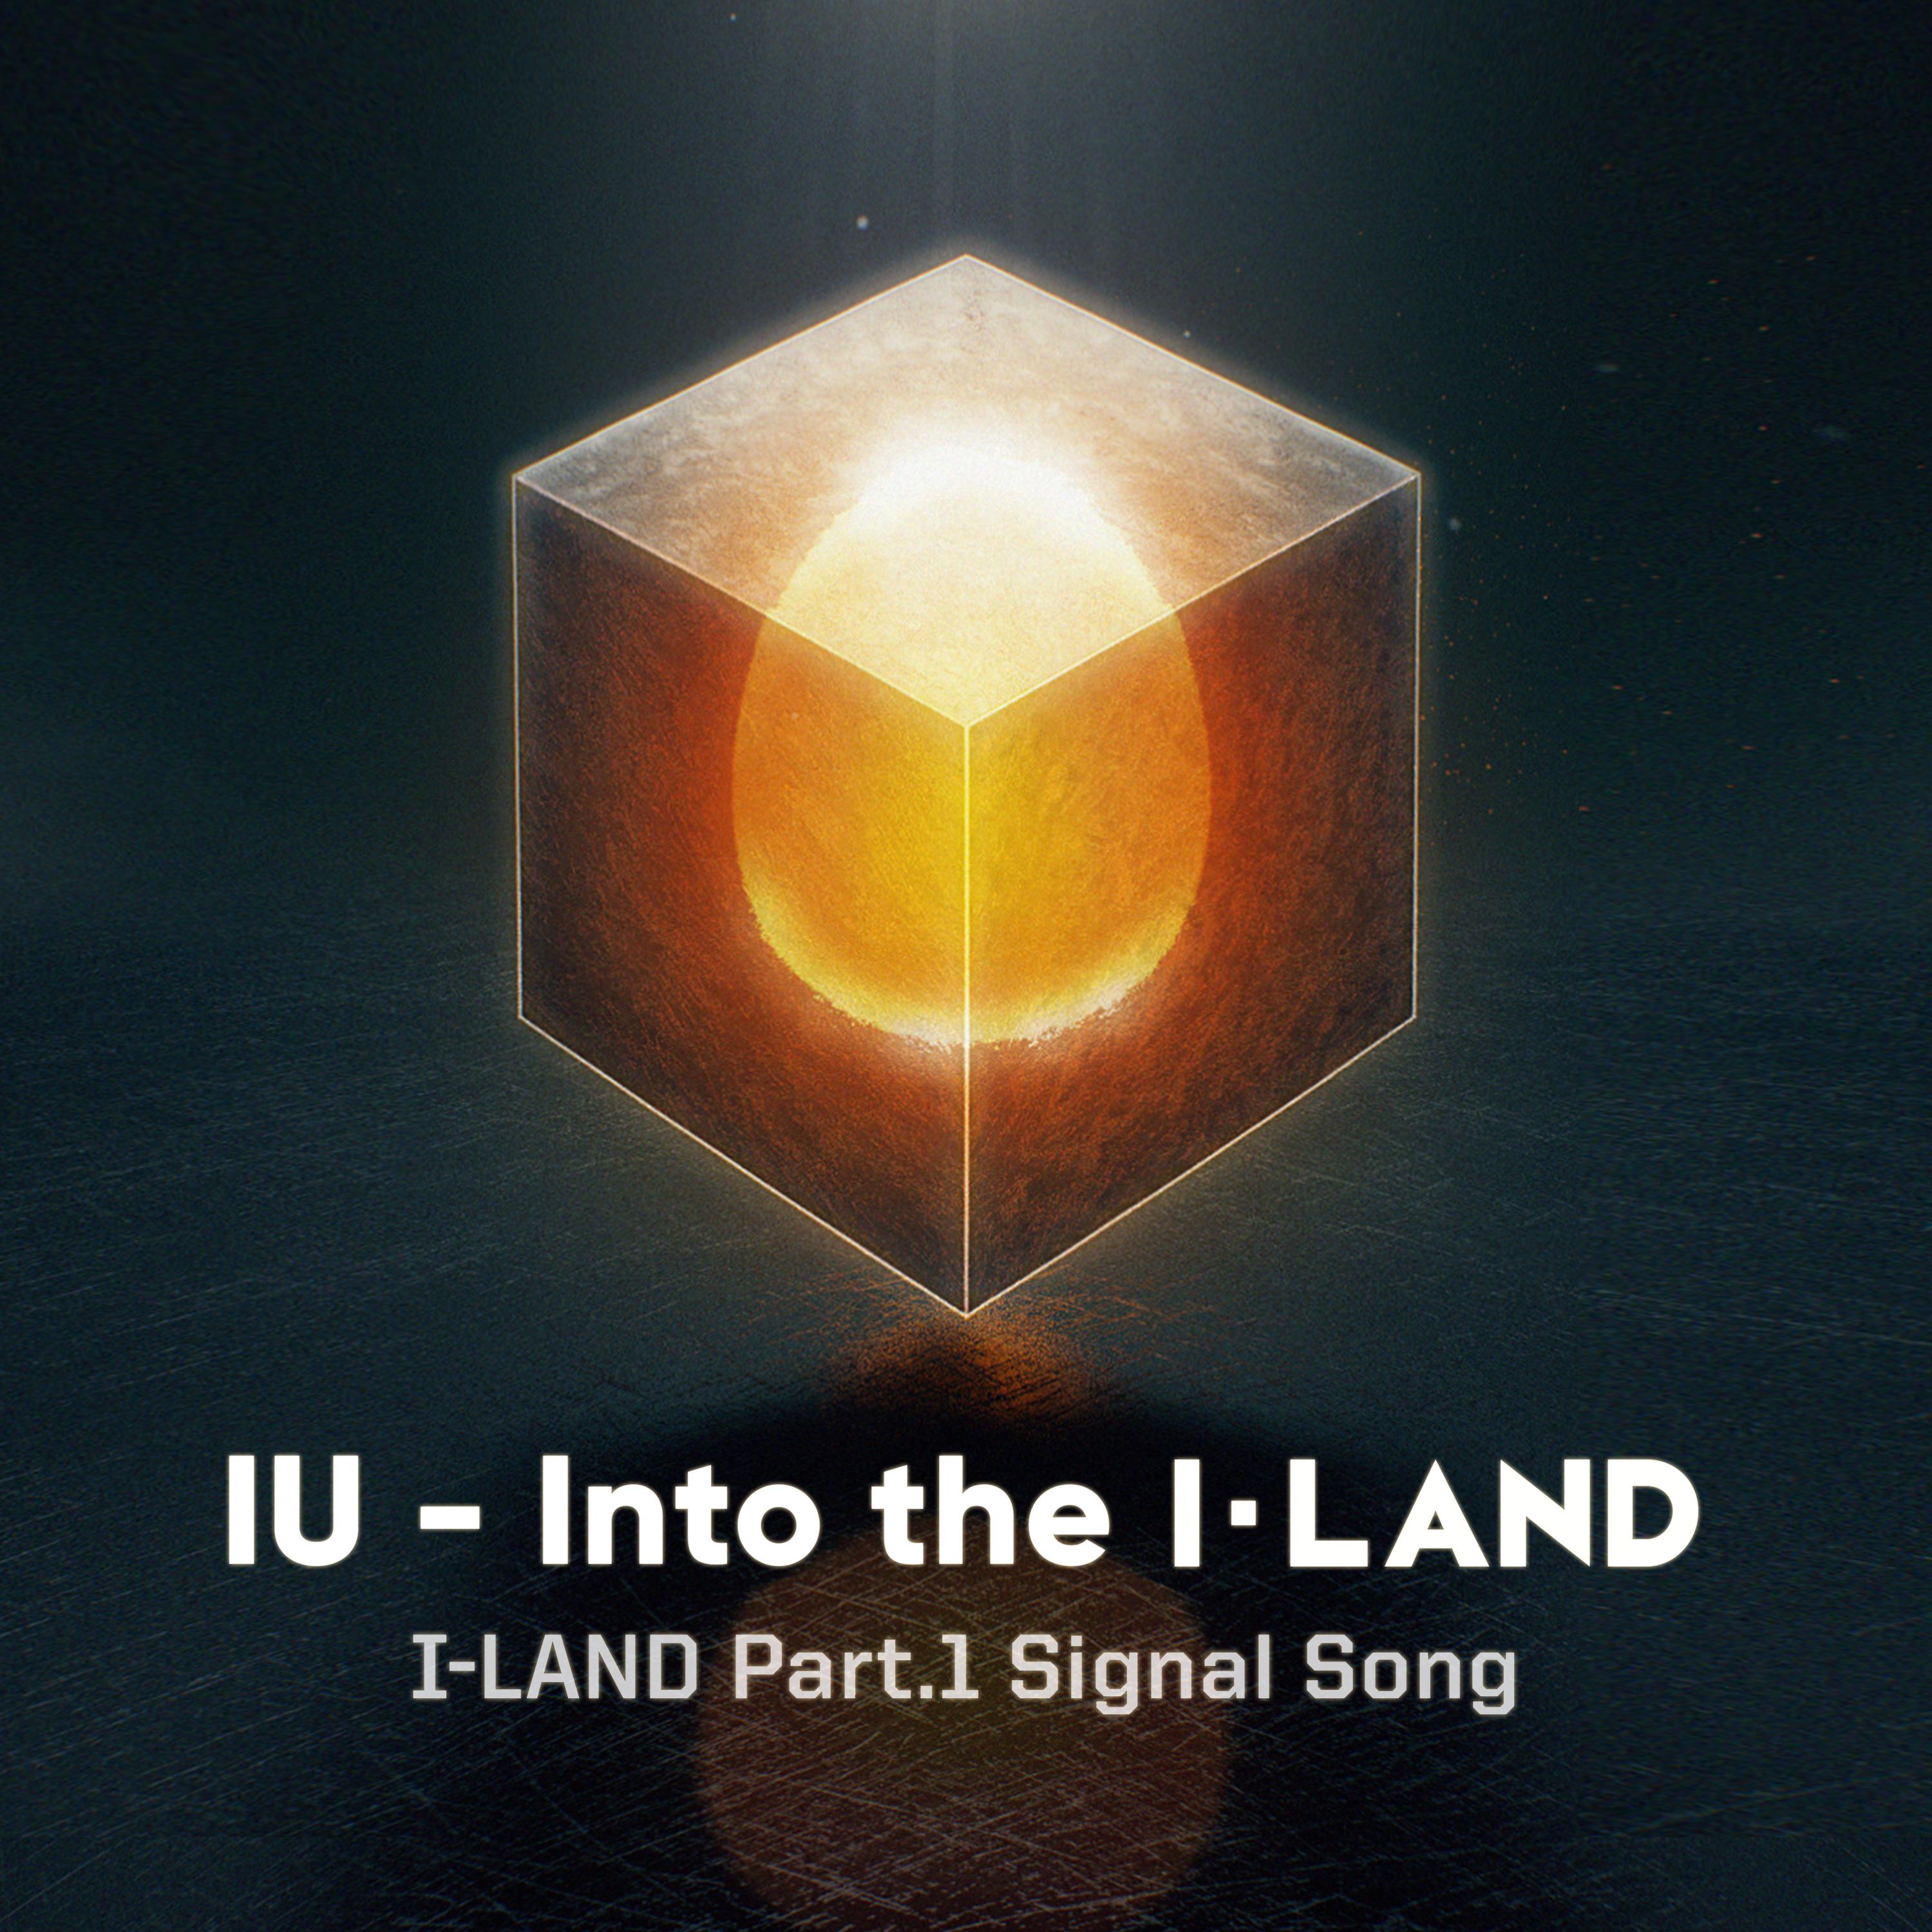 IU - Into the I-LAND